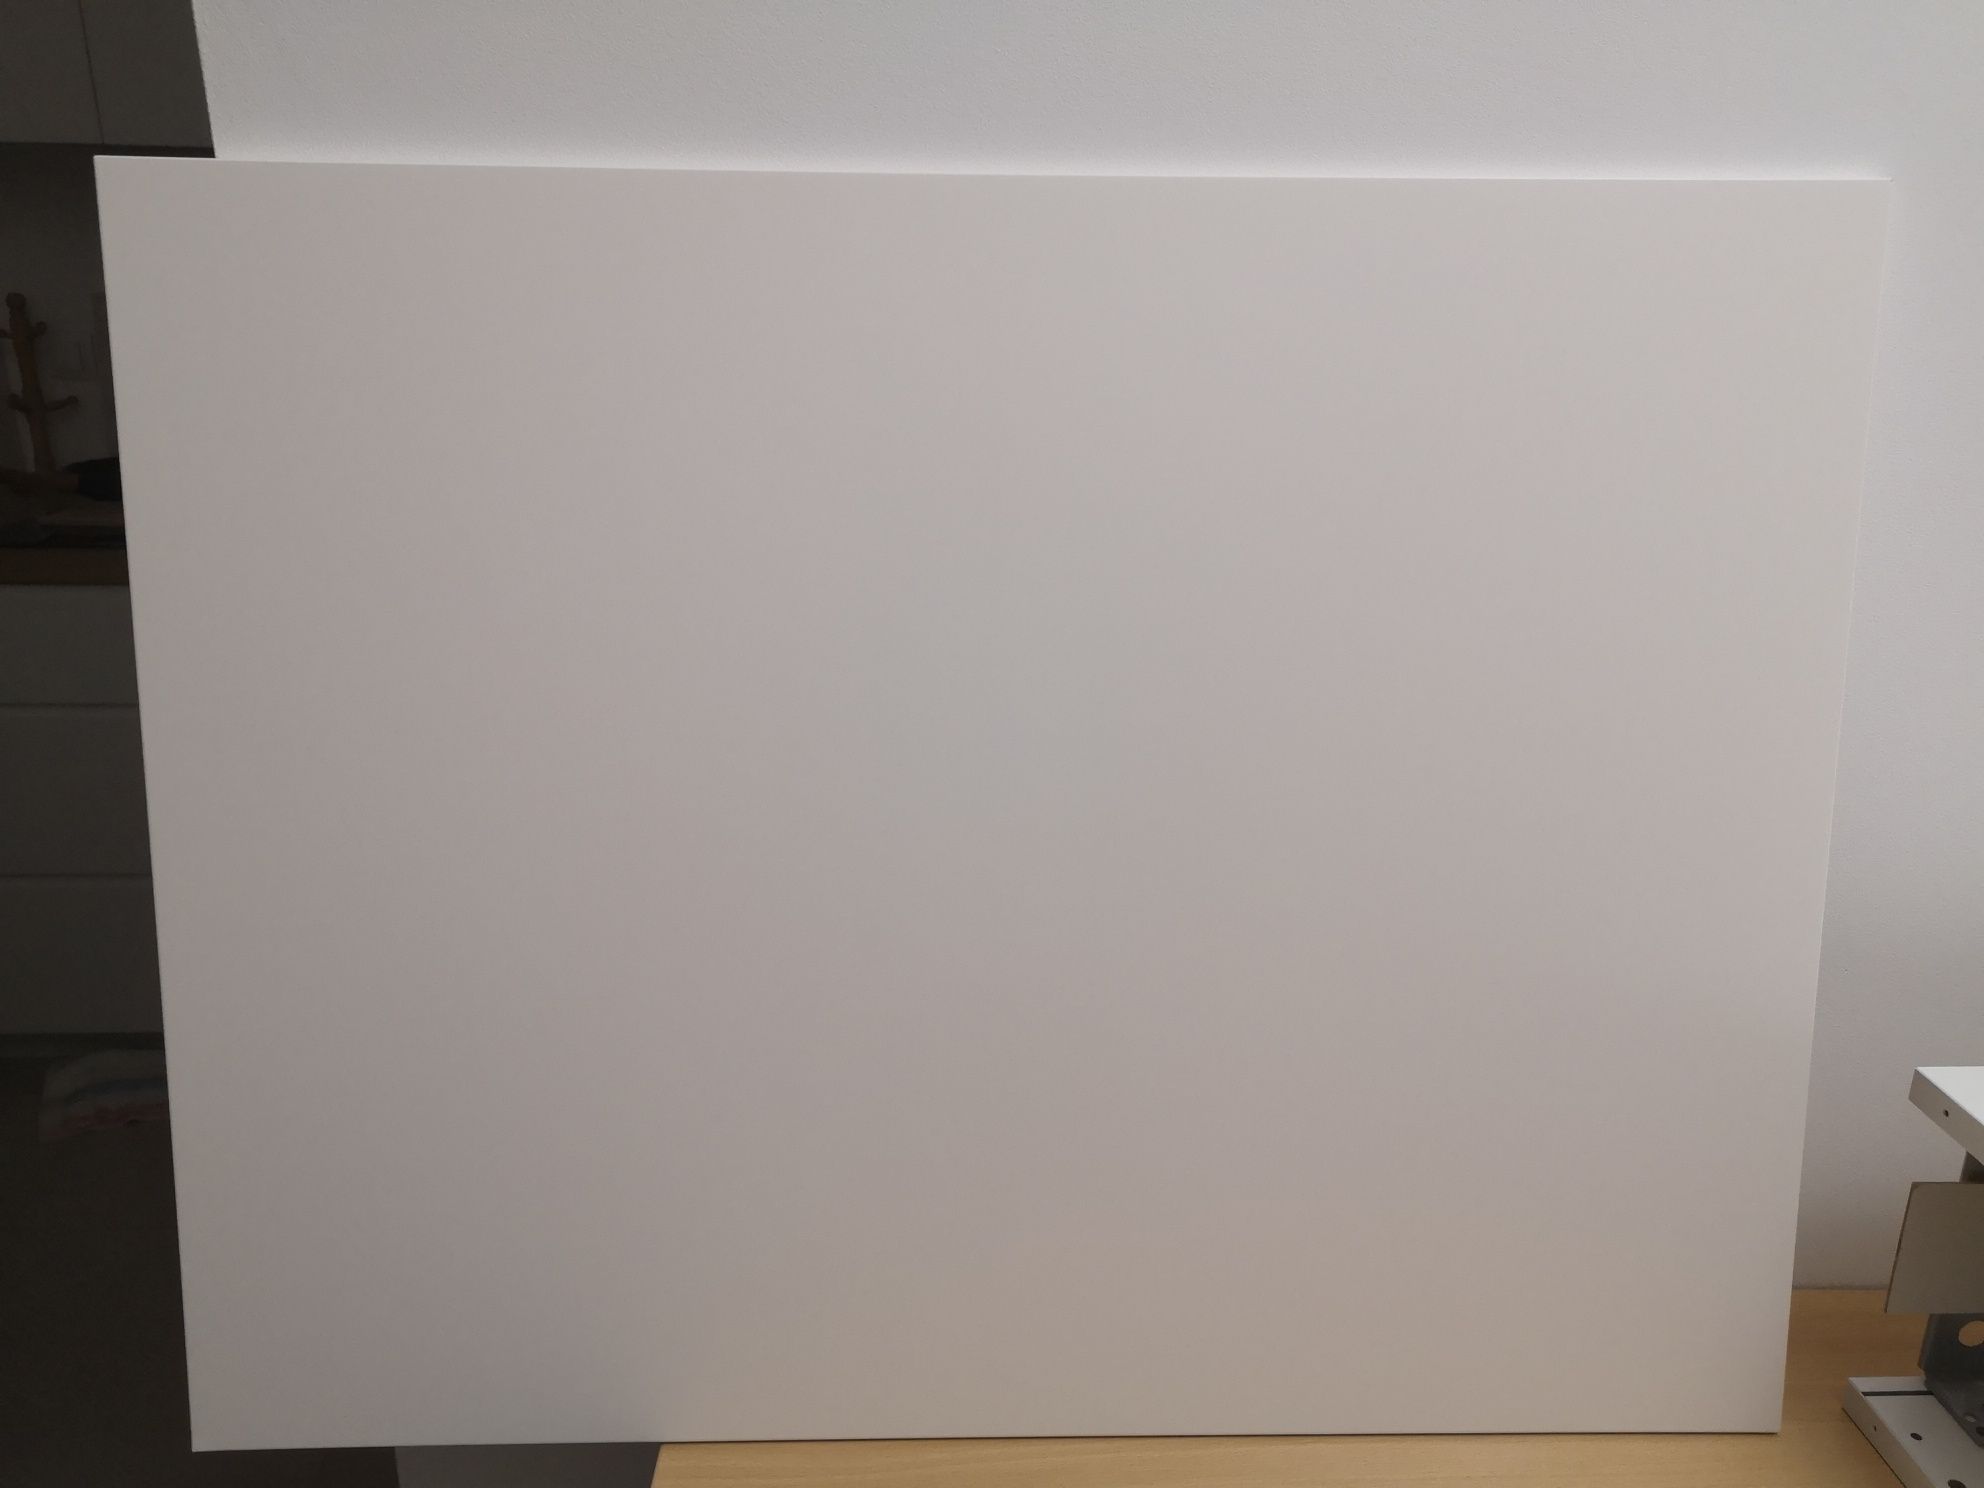 FORBATTRA
Panel maskujący ikea, matowy biały, 62x80 cm